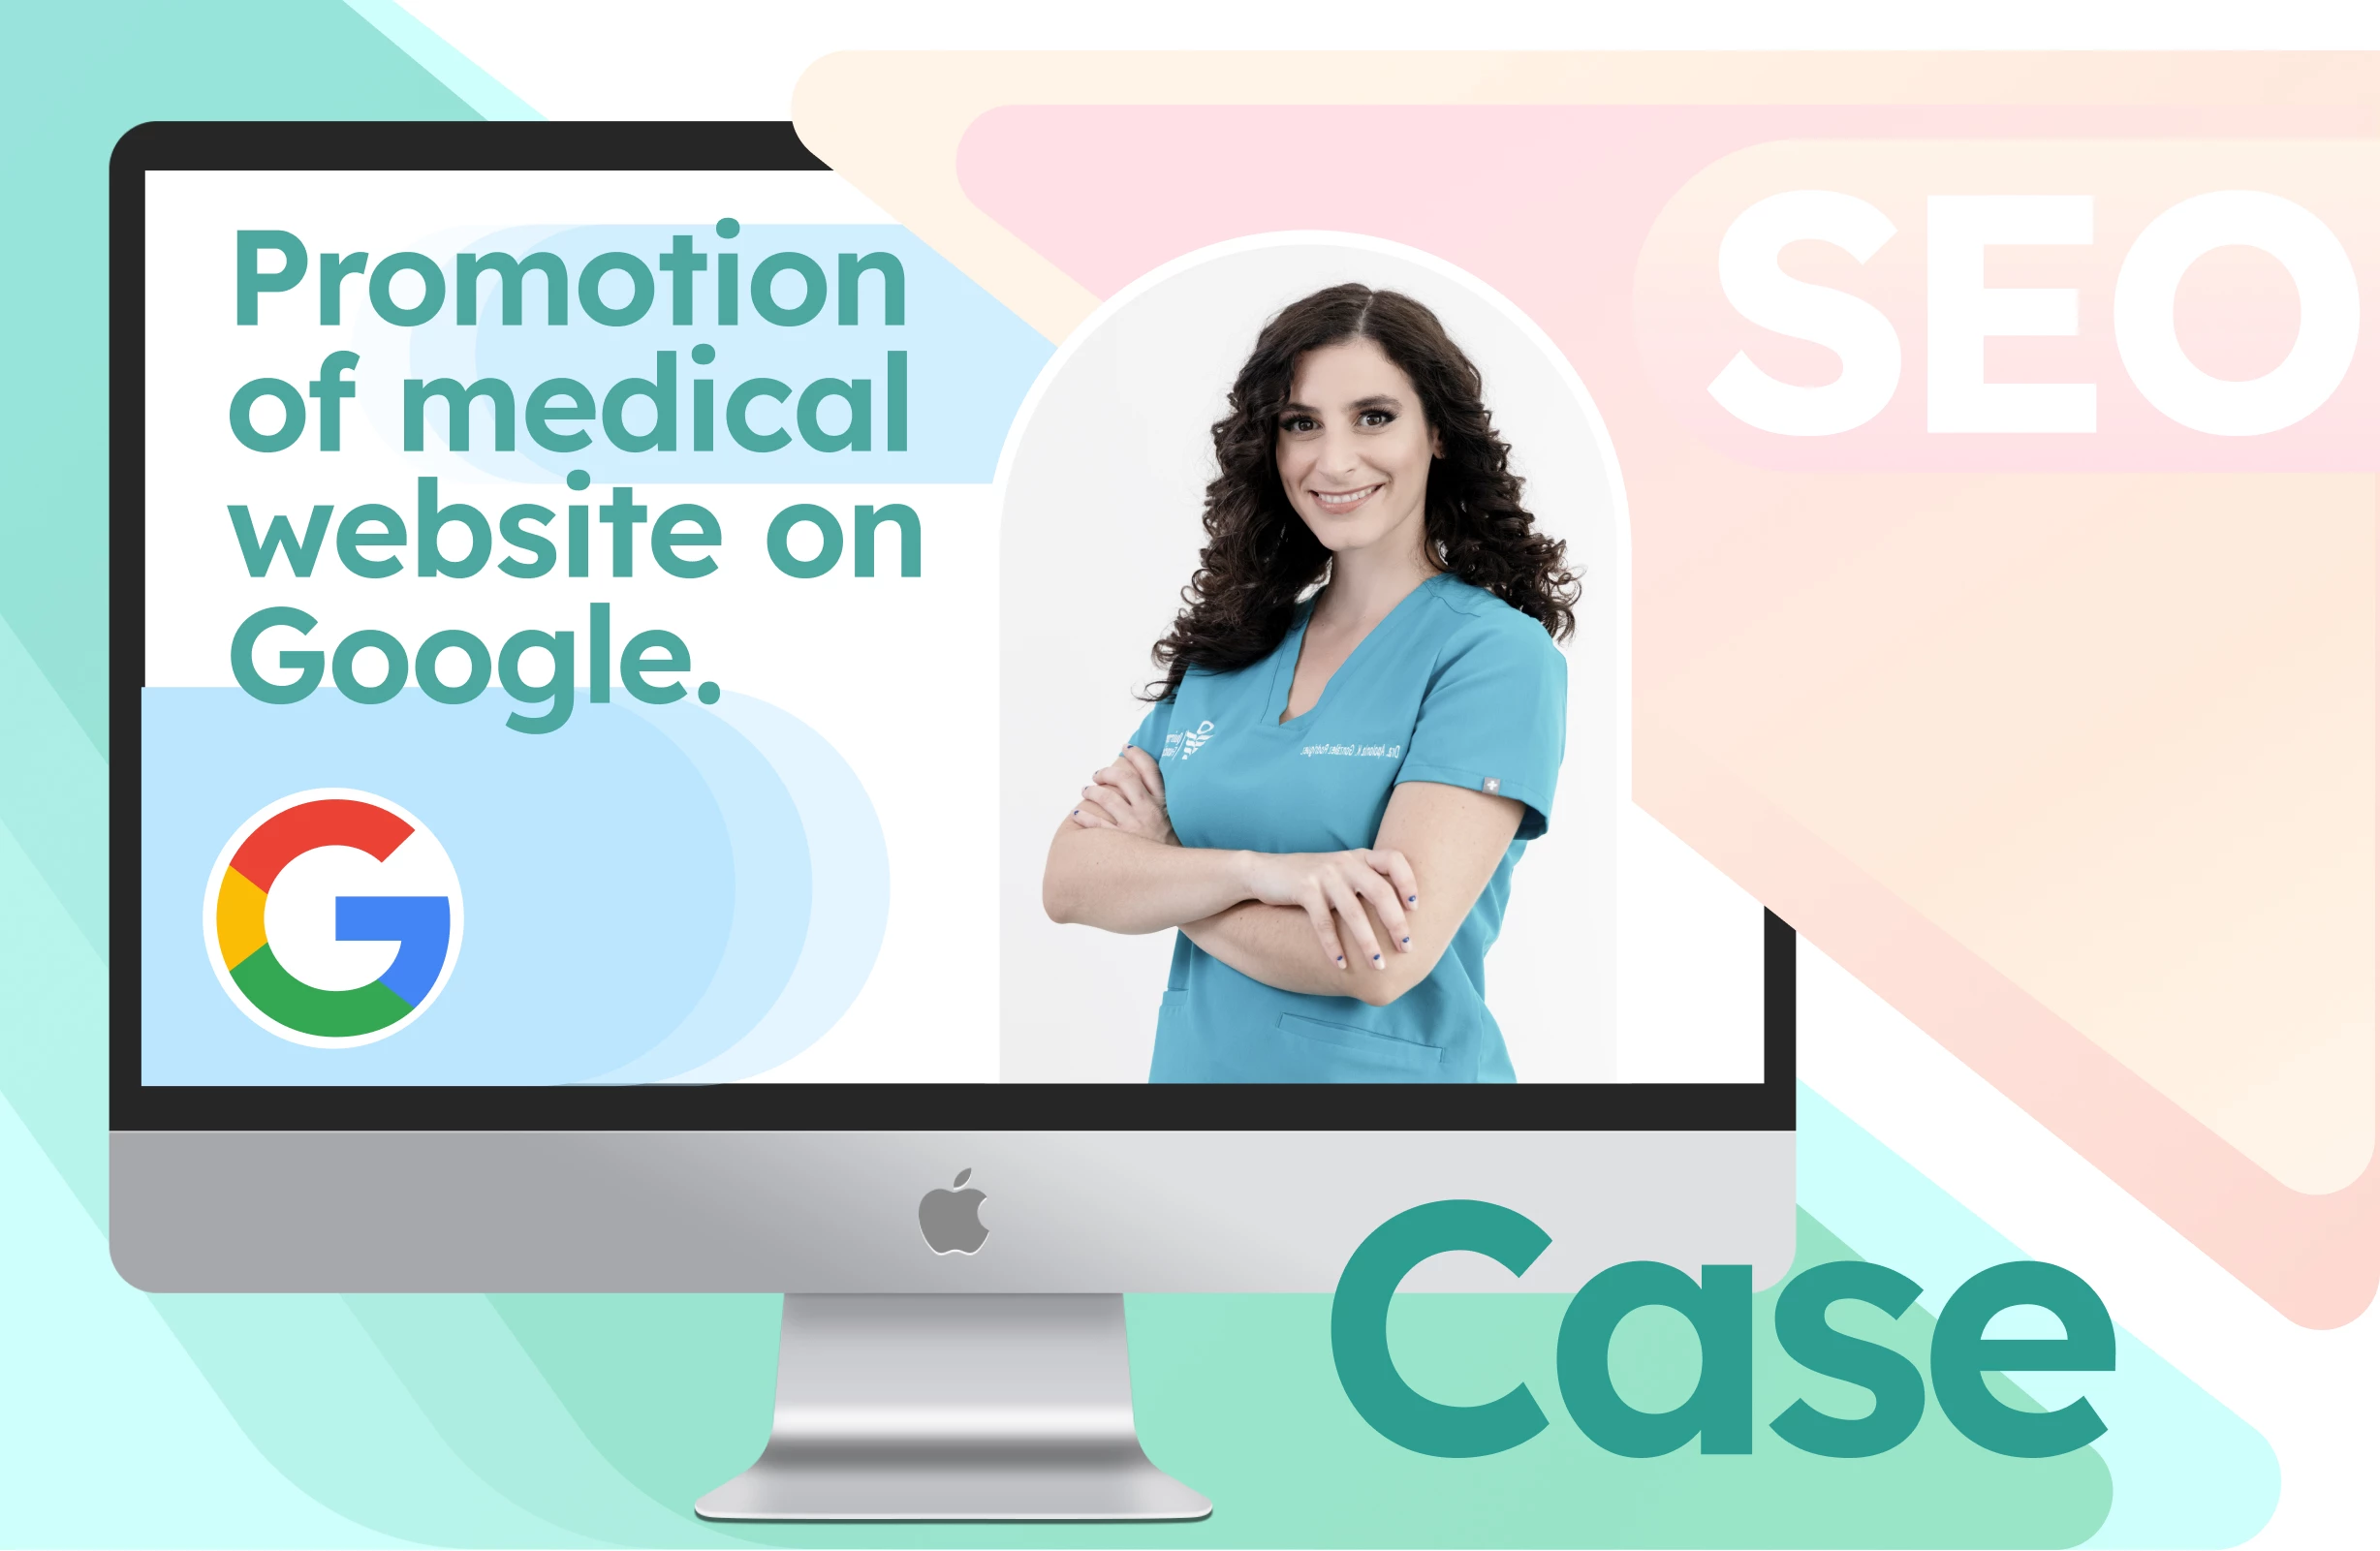 Étude de cas : Promotion du référencement d'un site web médical sur Google. Rétrospective sur cinq ans